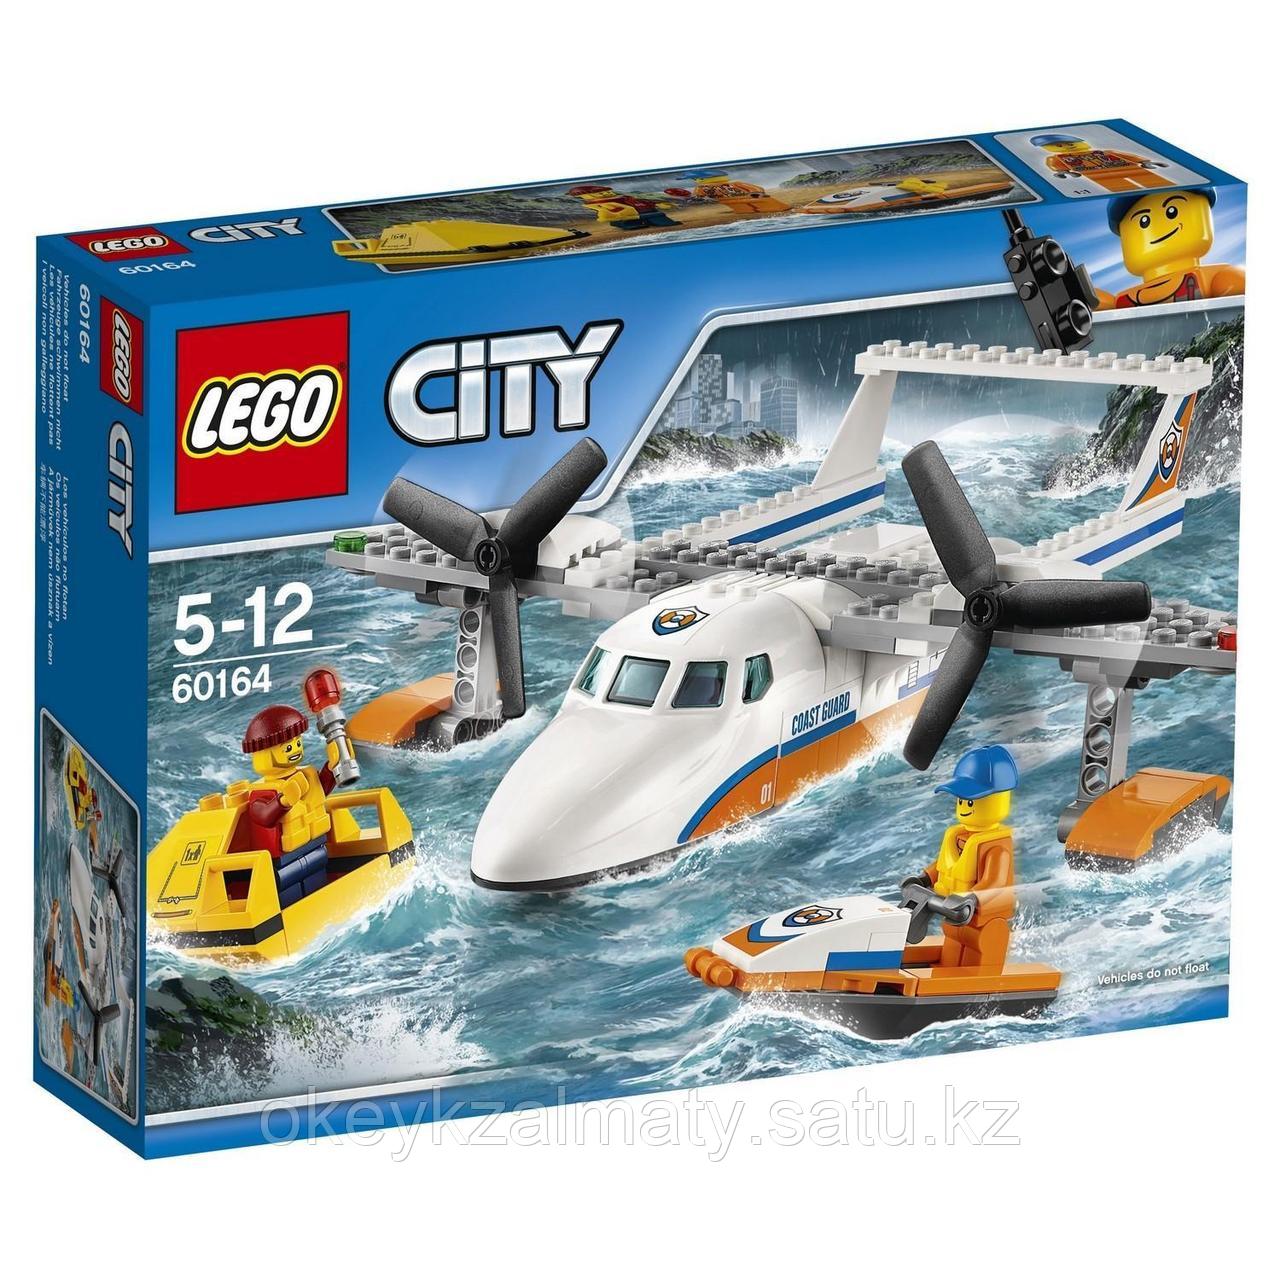 LEGO City: Спасательный самолет береговой охраны 60164